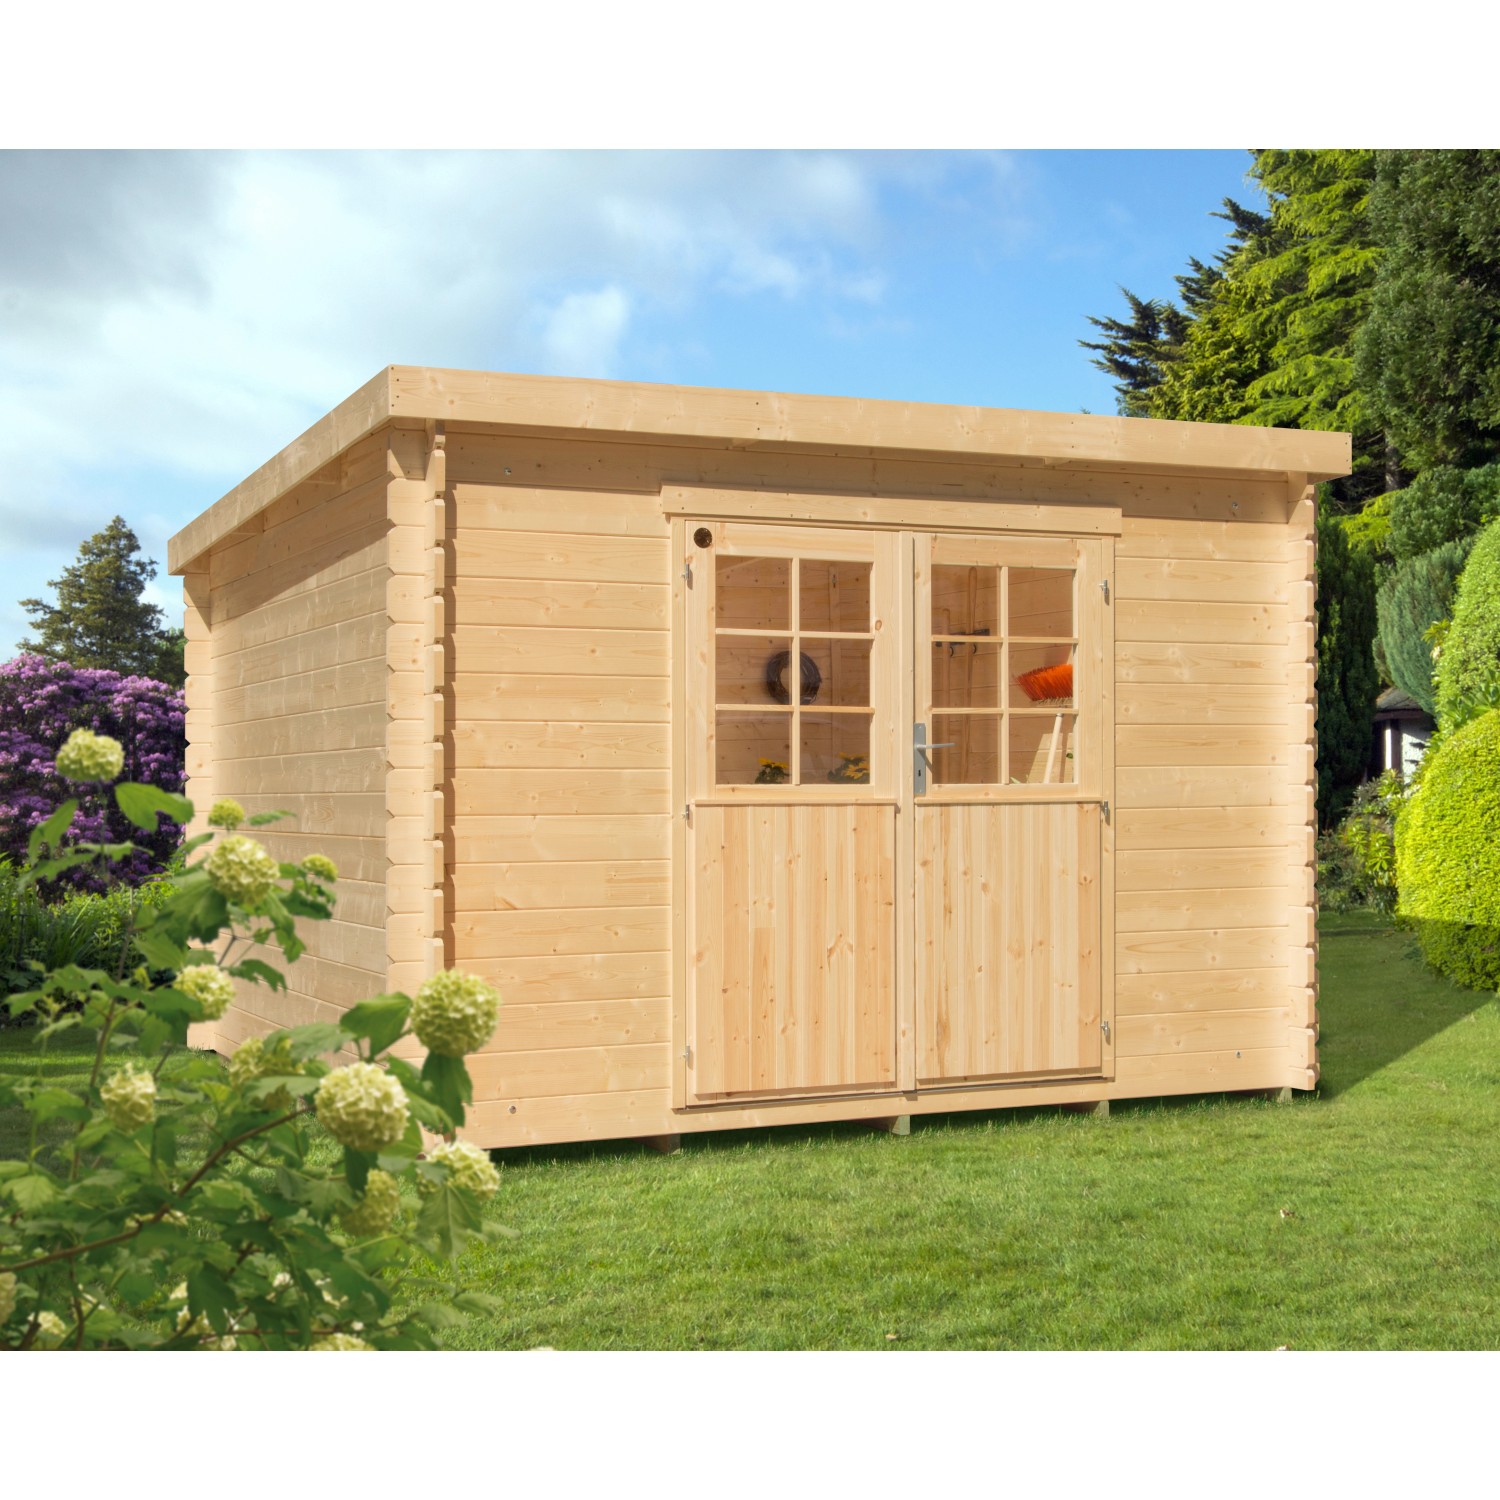 Kiehn-Holz Gartenhäuser OBI kaufen bei online